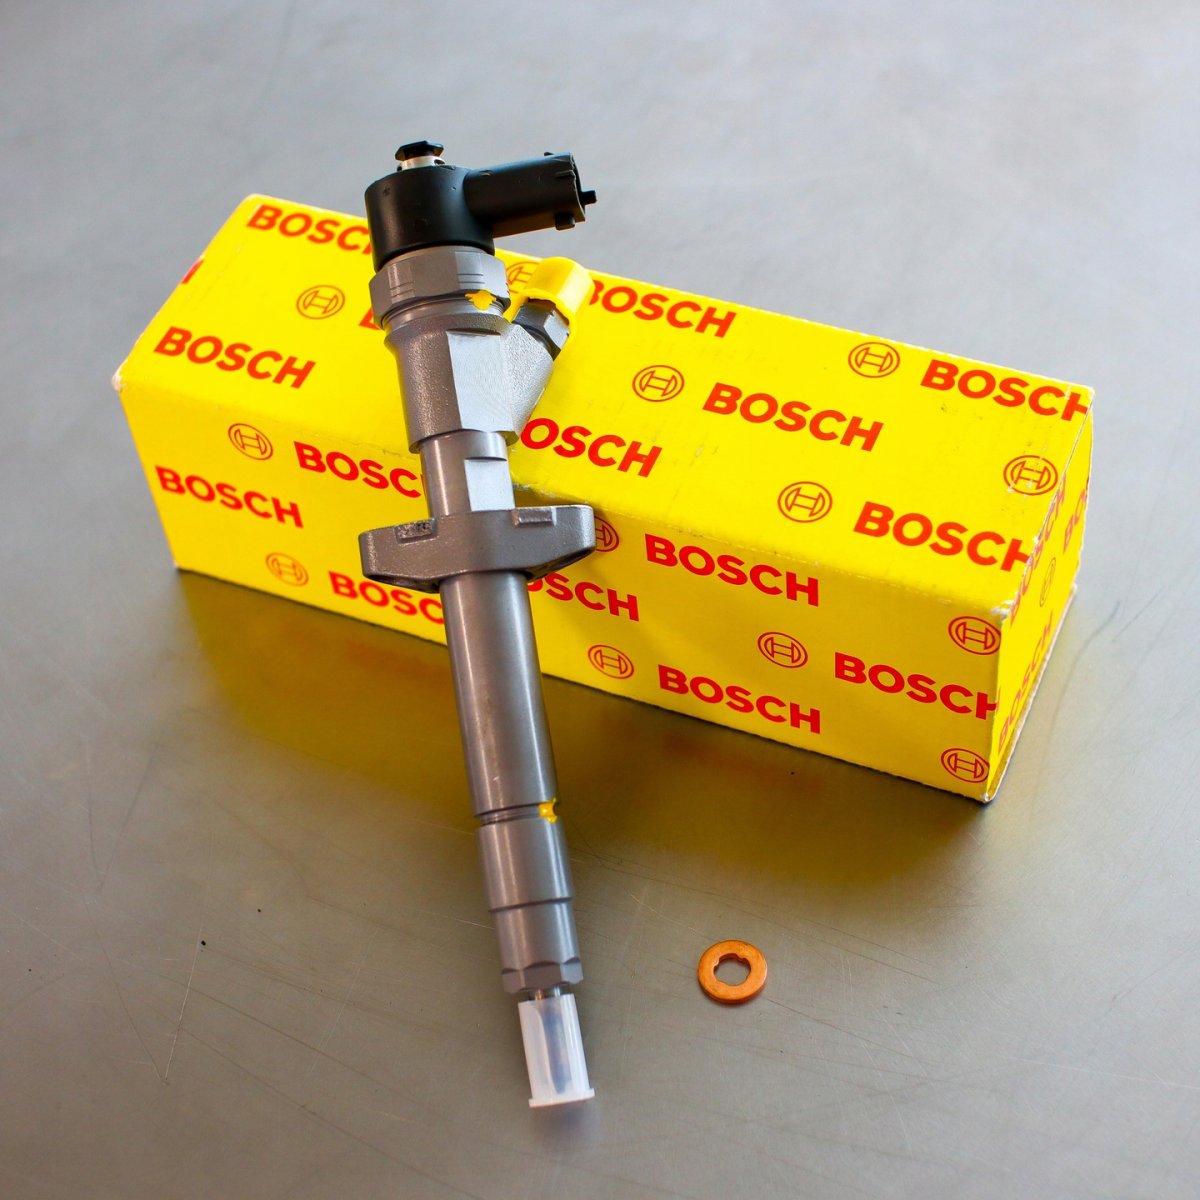 Wtryskiwacz Bosch naprawiony gotowy do wysyłki do zamawiającego z gwarancją 24 miesiące - niska cena